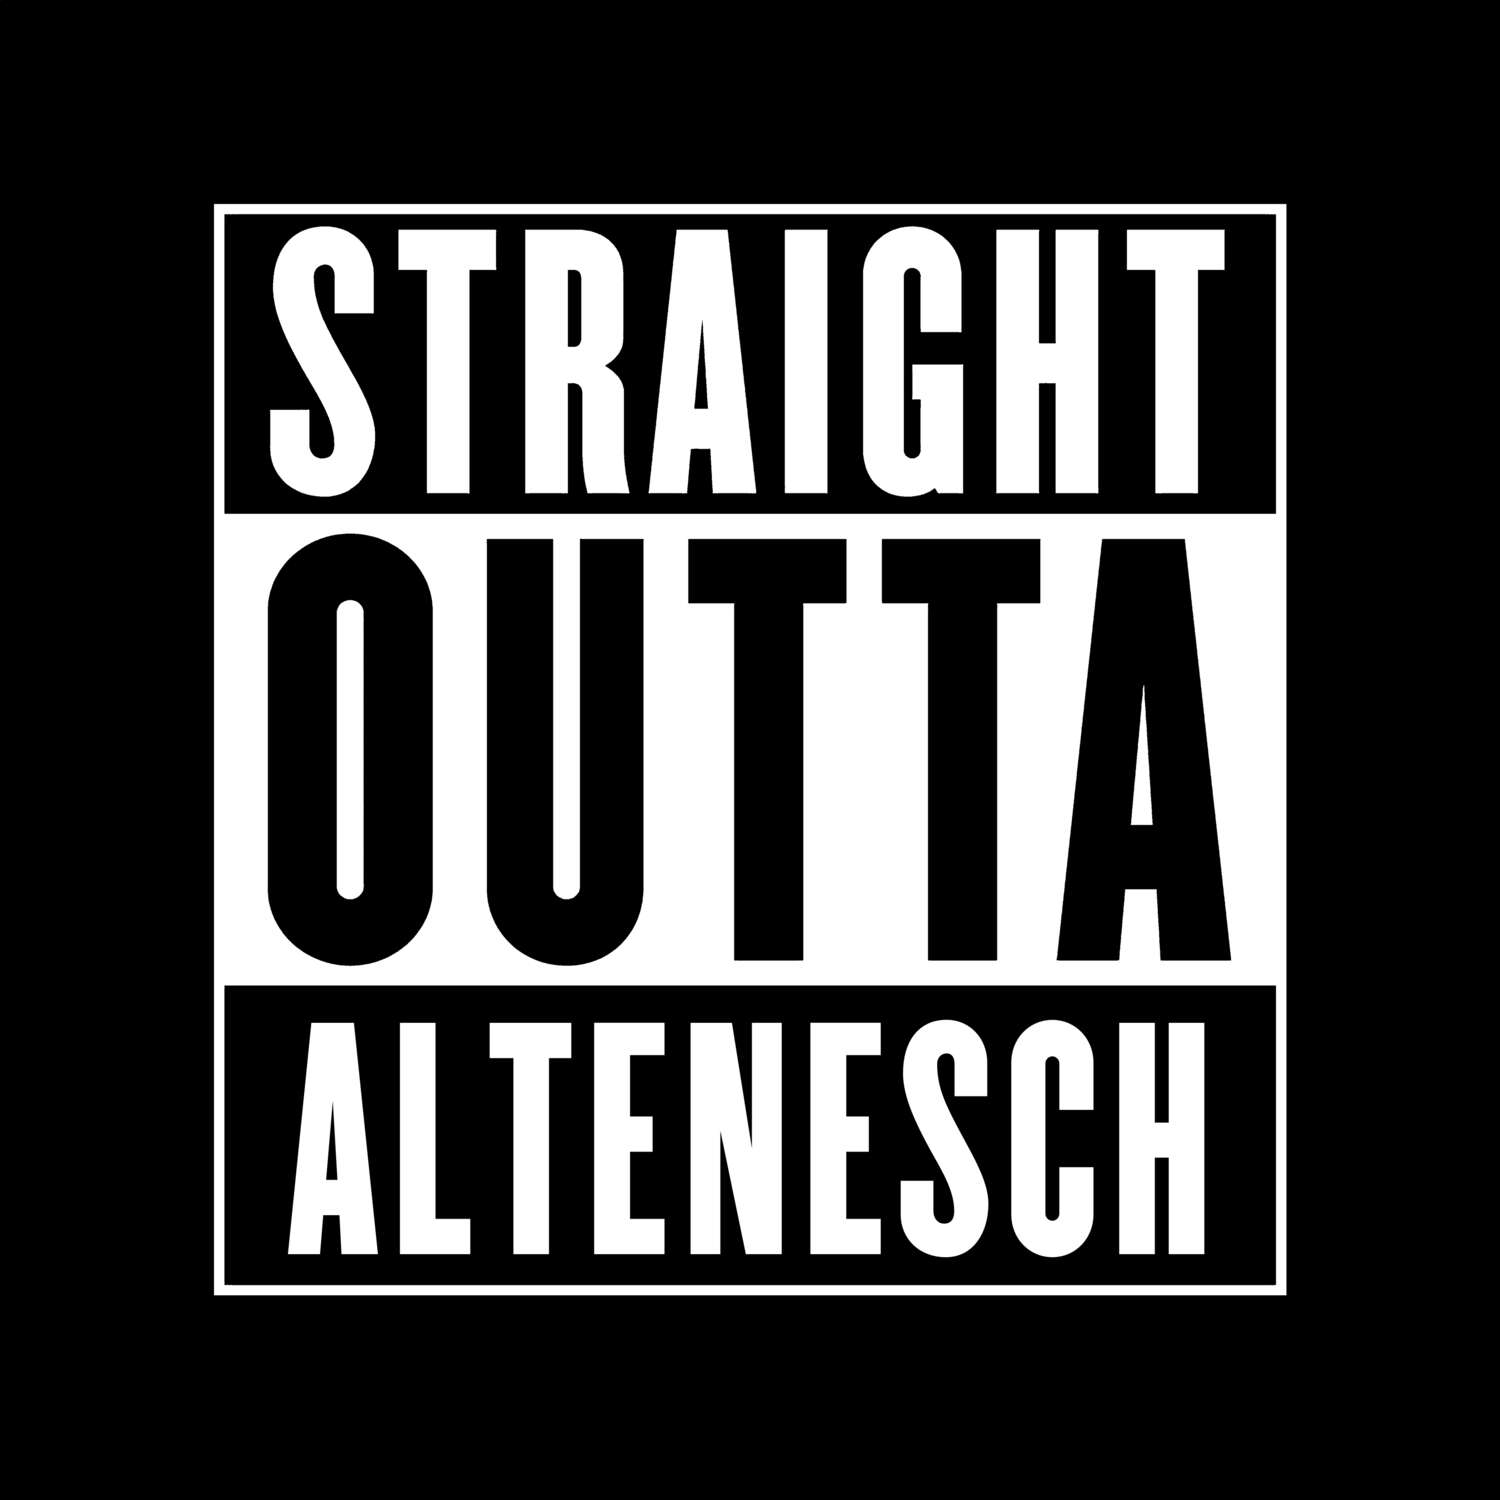 Altenesch T-Shirt »Straight Outta«